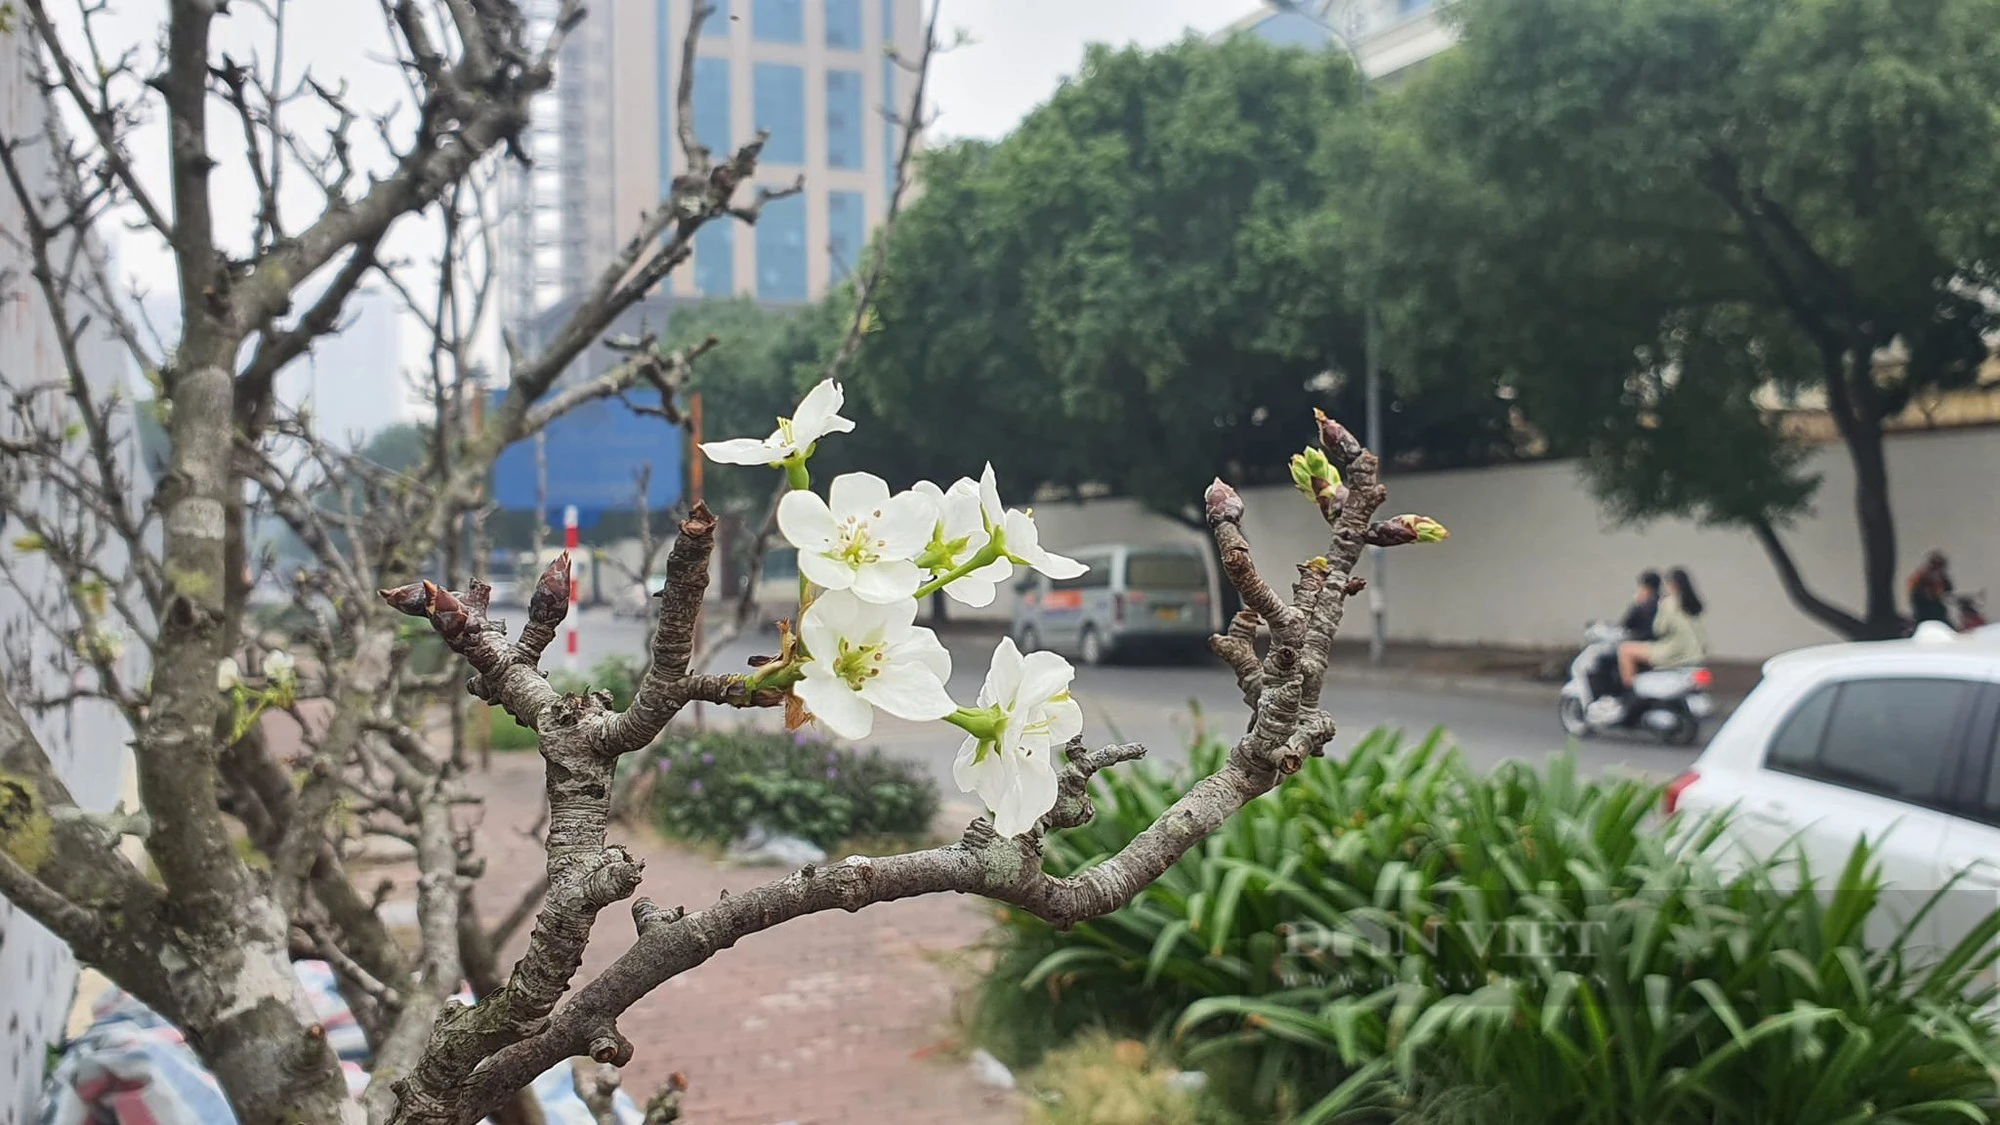 Hoa lê rừng mốc thếch, hình dáng độc, lạ nở trắng nhiều tuyến phố Hà Nội, giá 2 - 3 triệu đồng/cành - Ảnh 2.